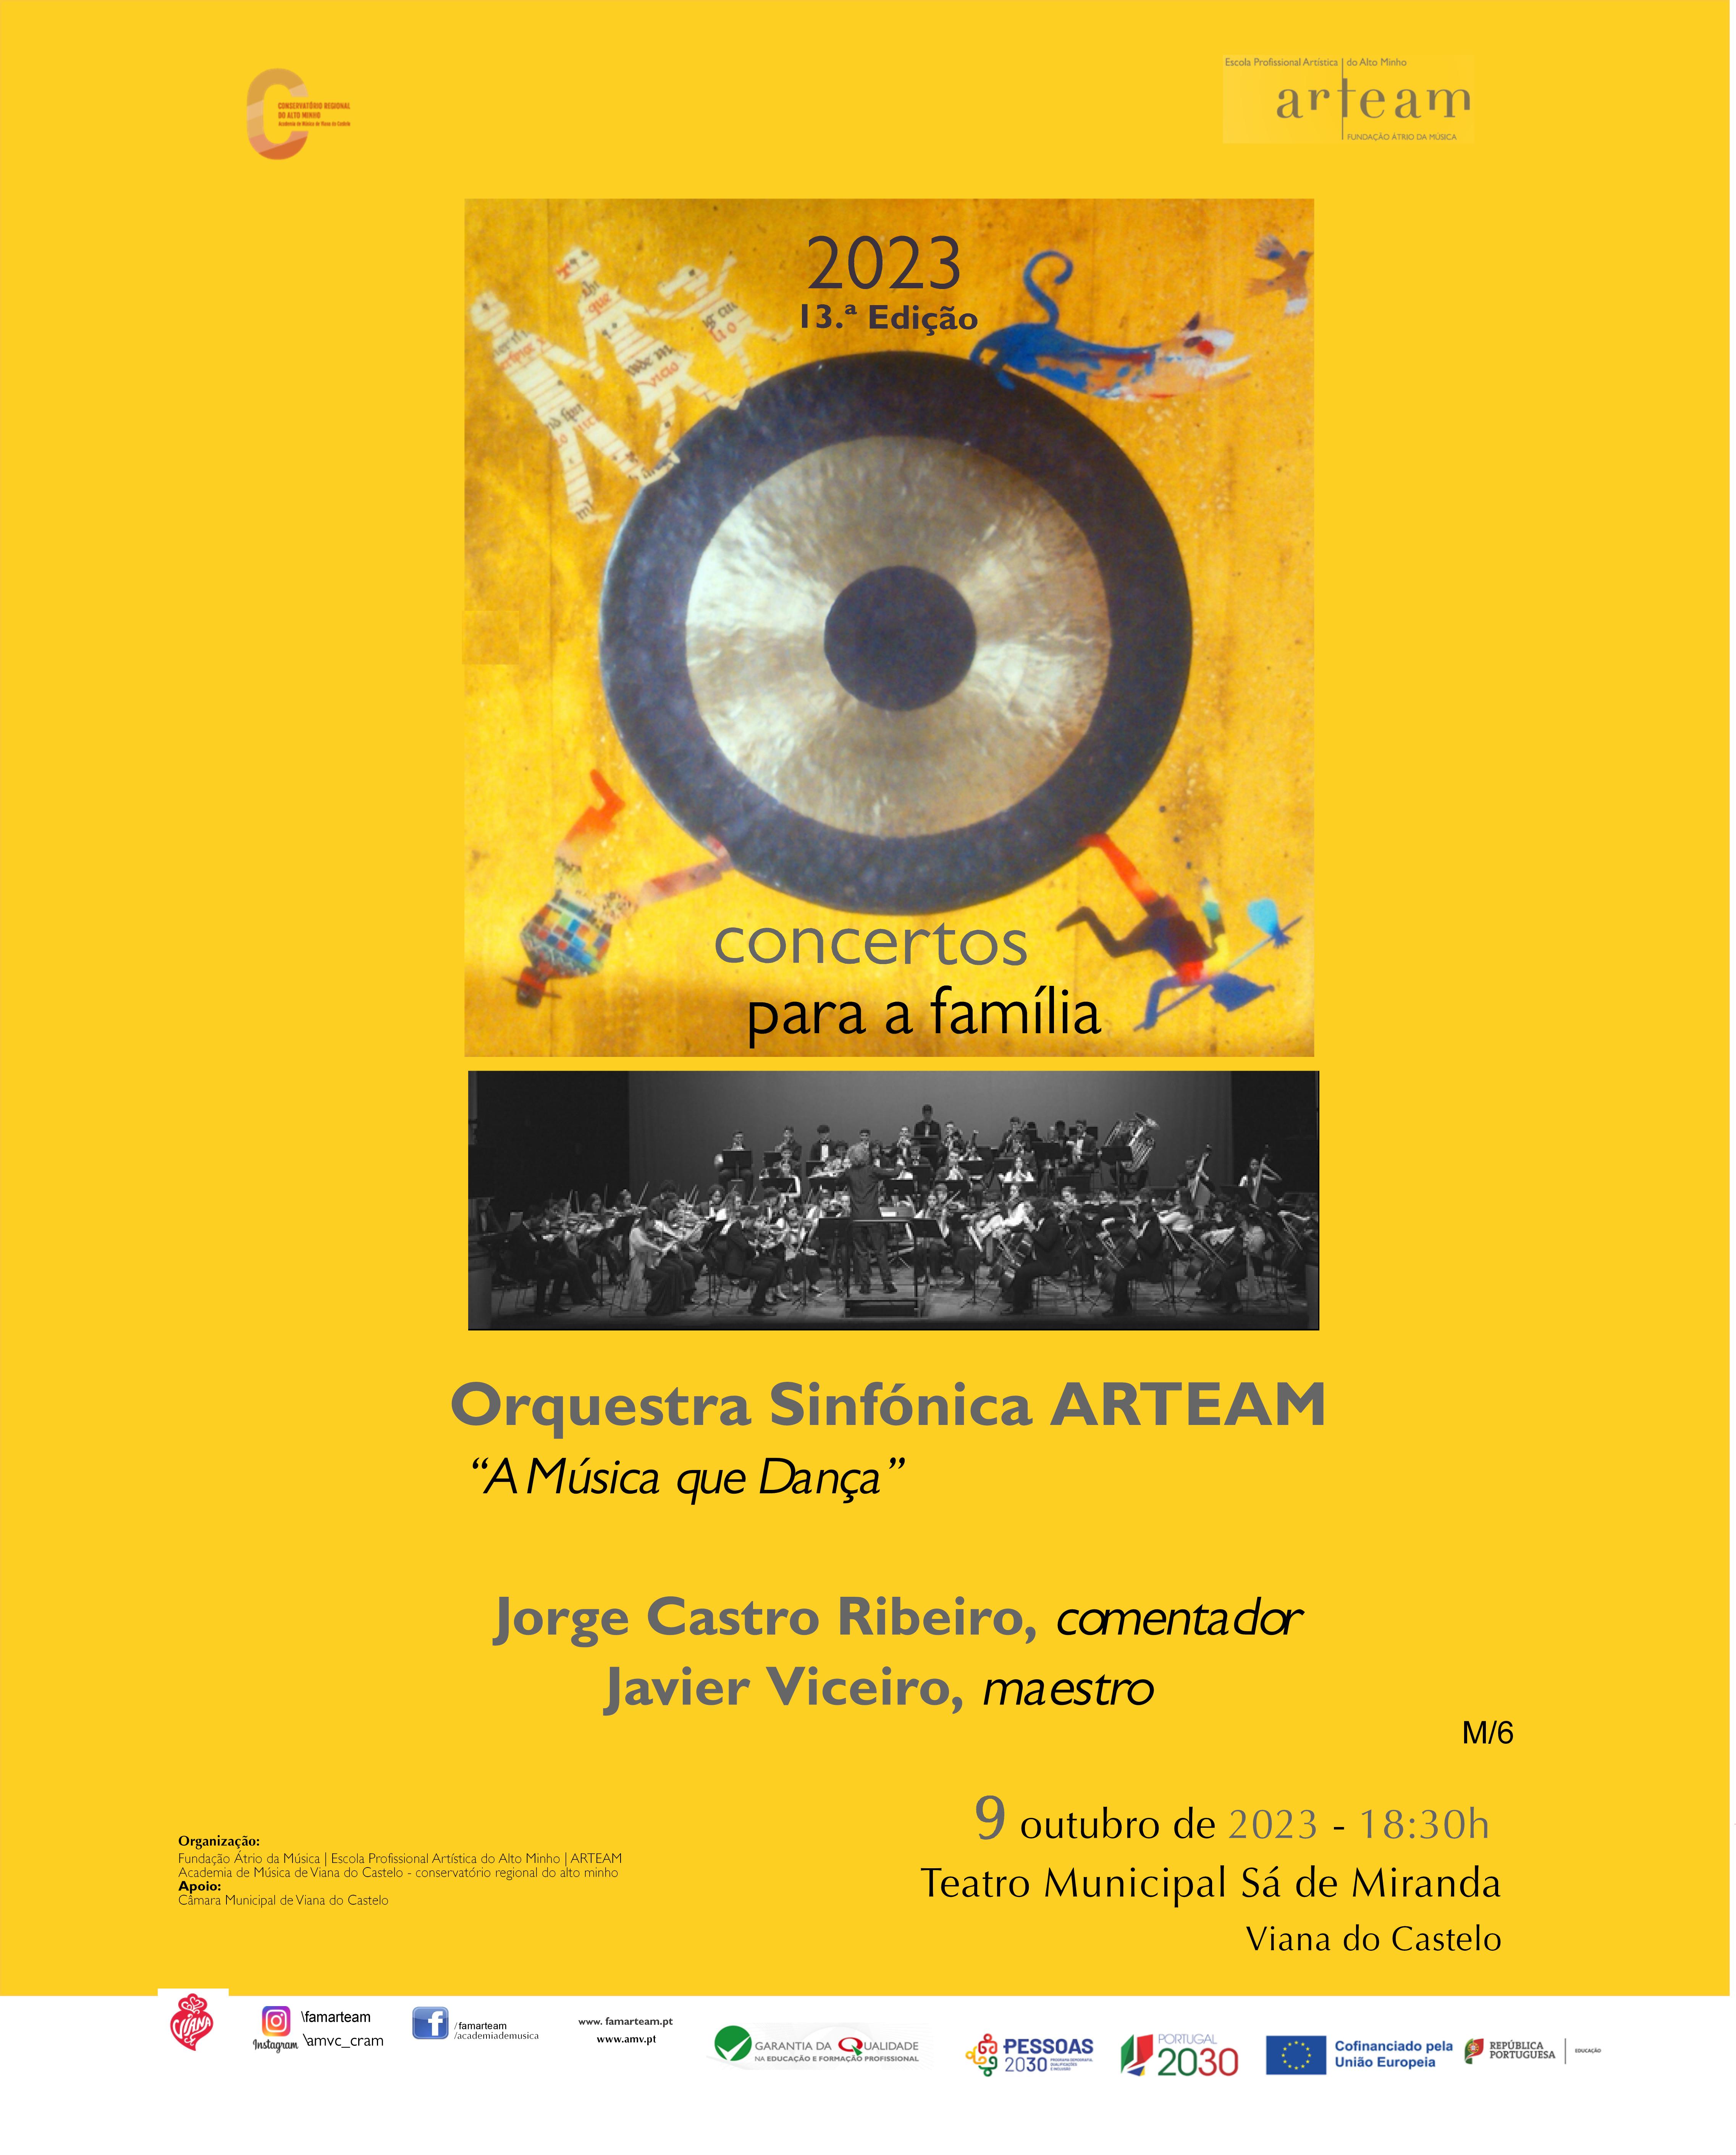 Concerto para a família 2023 no Teatro Municipal Sá de Miranda